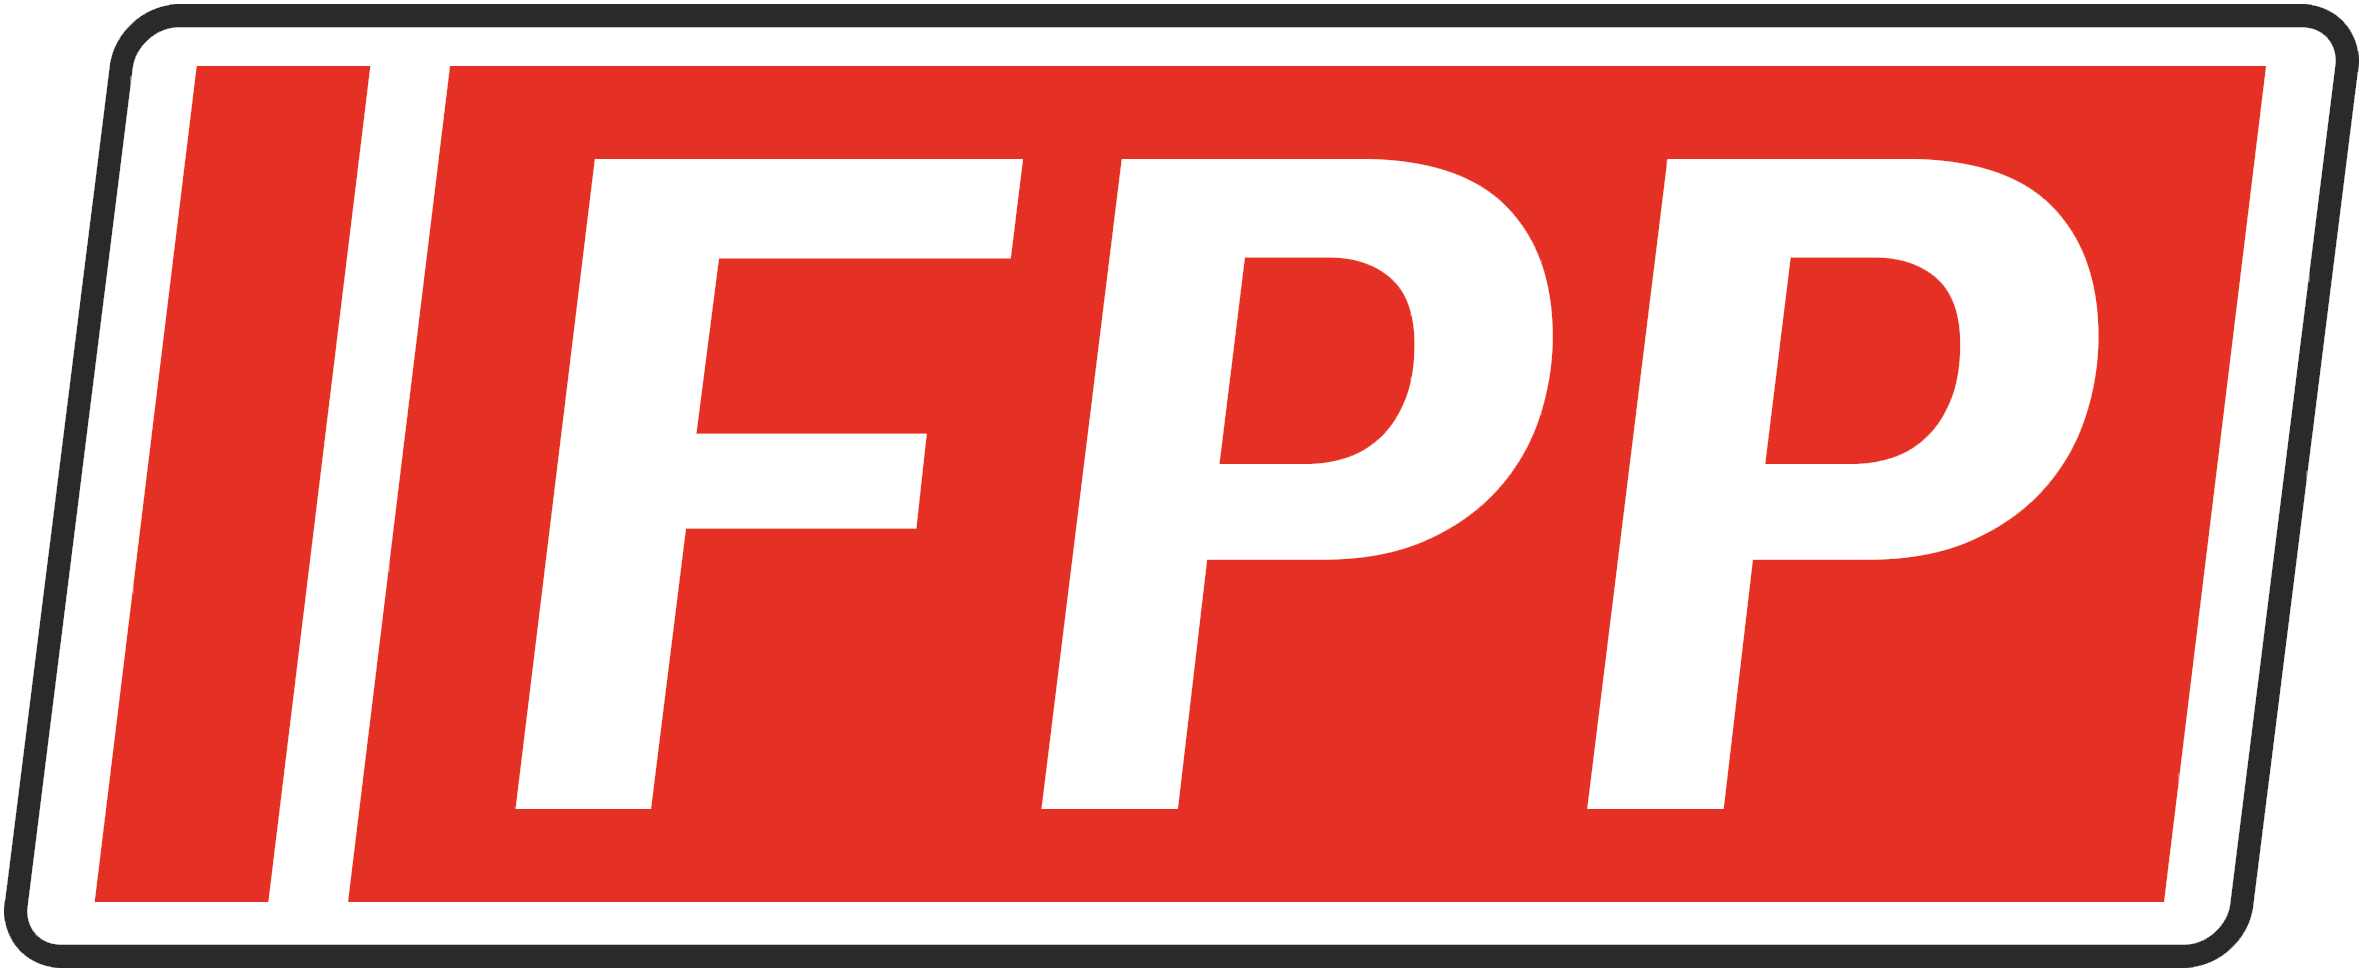 FPP.REFUEL THE POWER